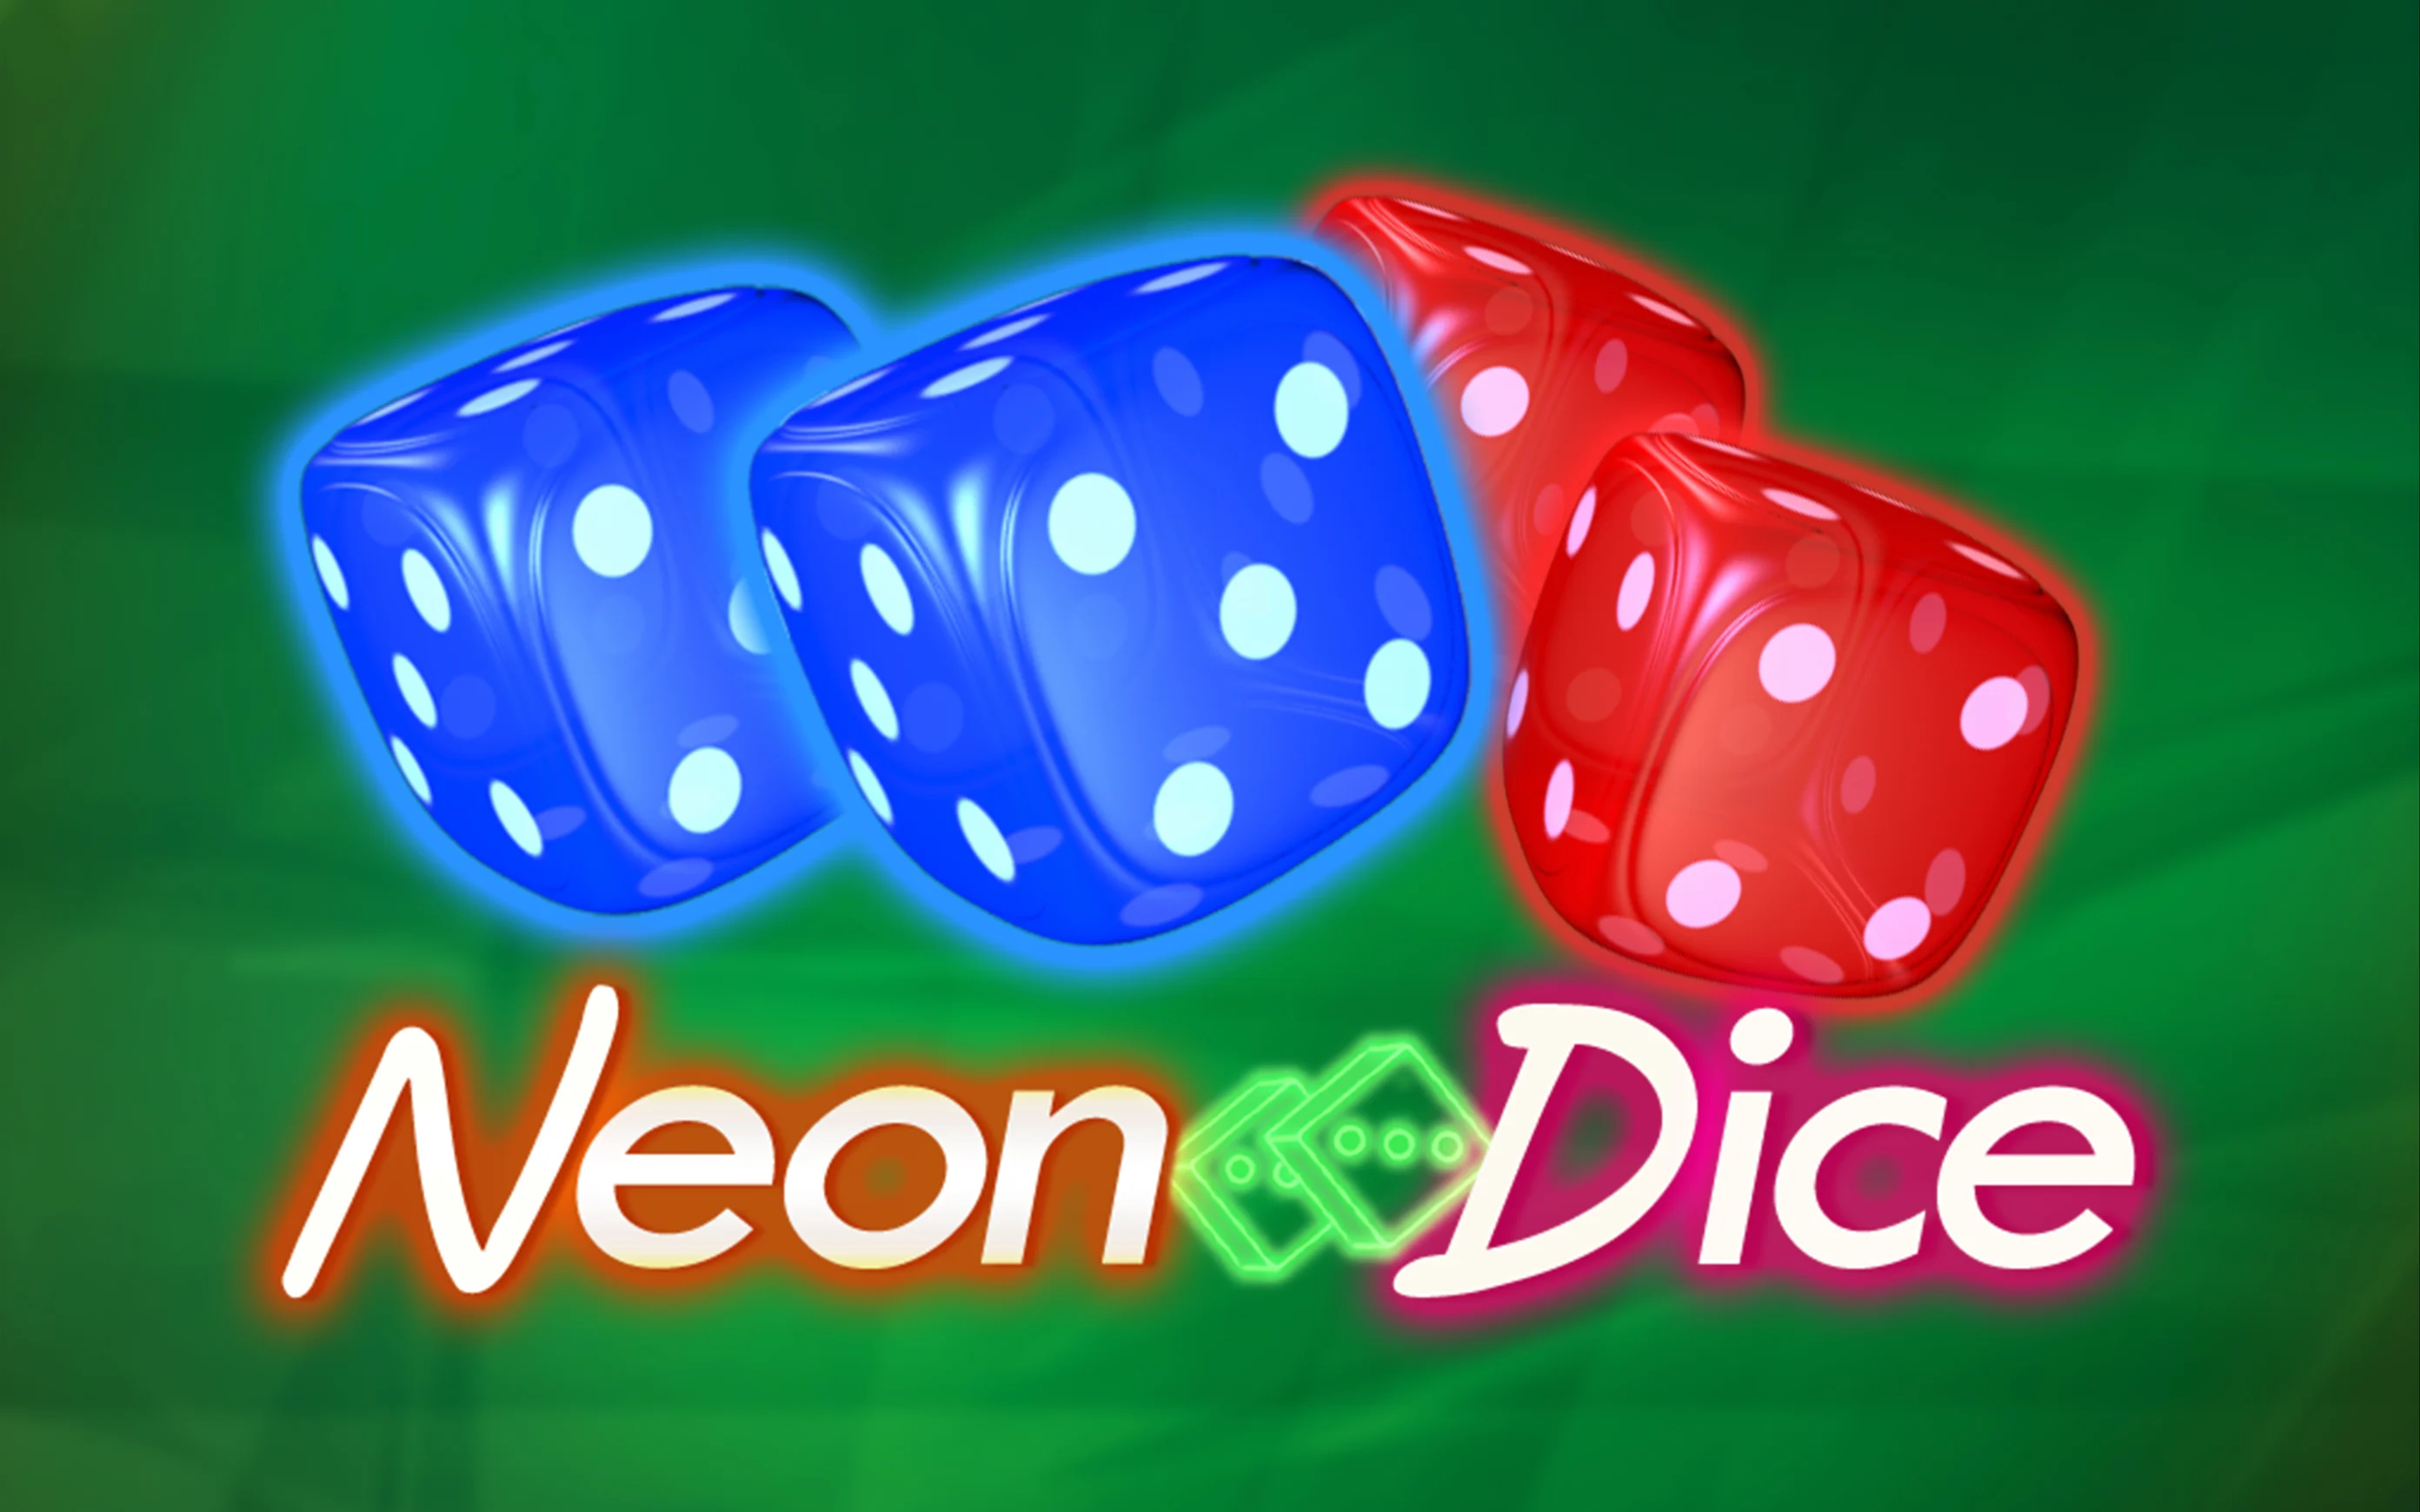 Play Neon Dice on Starcasino.be online casino